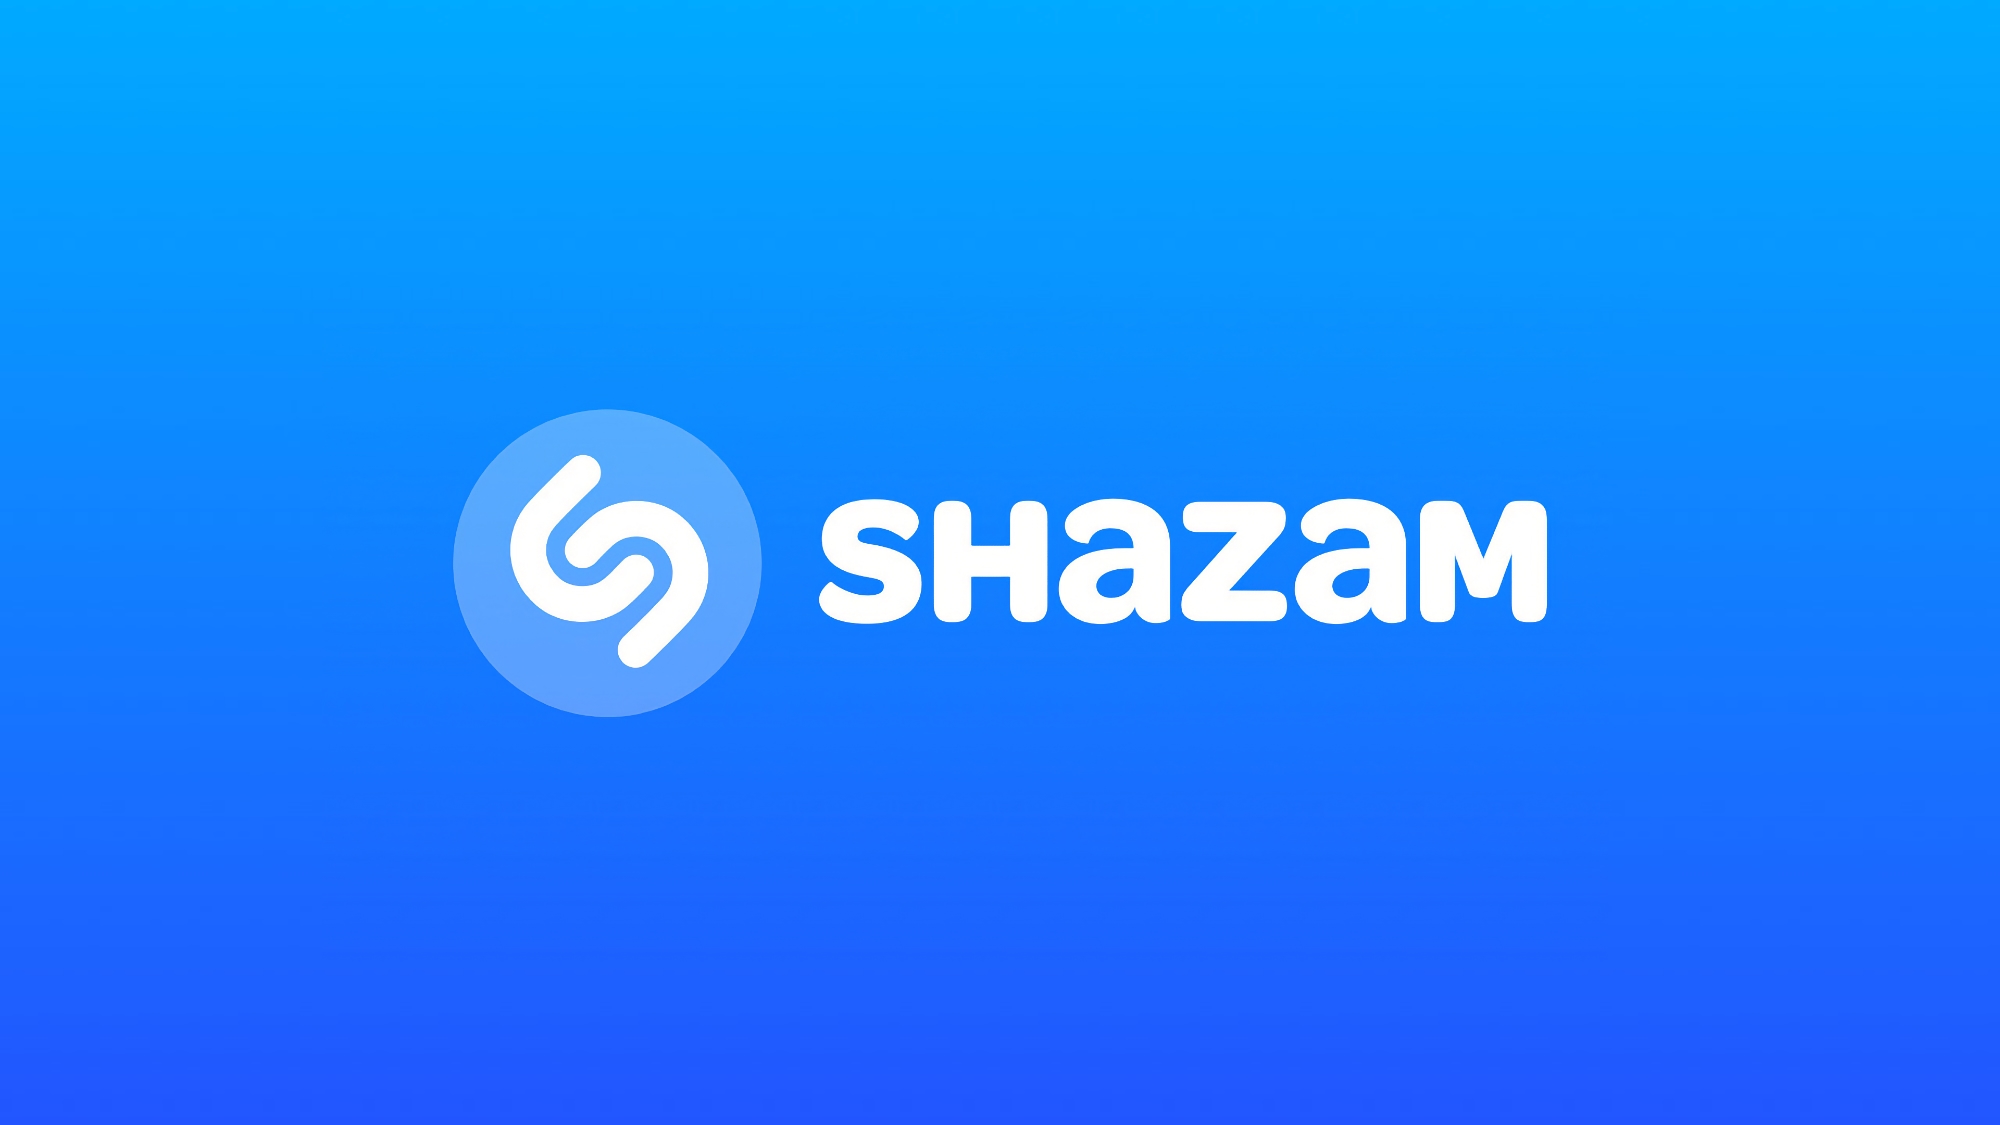 Shazam lär sig att känna igen musik i TikTok, Instagram, YouTube och andra appar